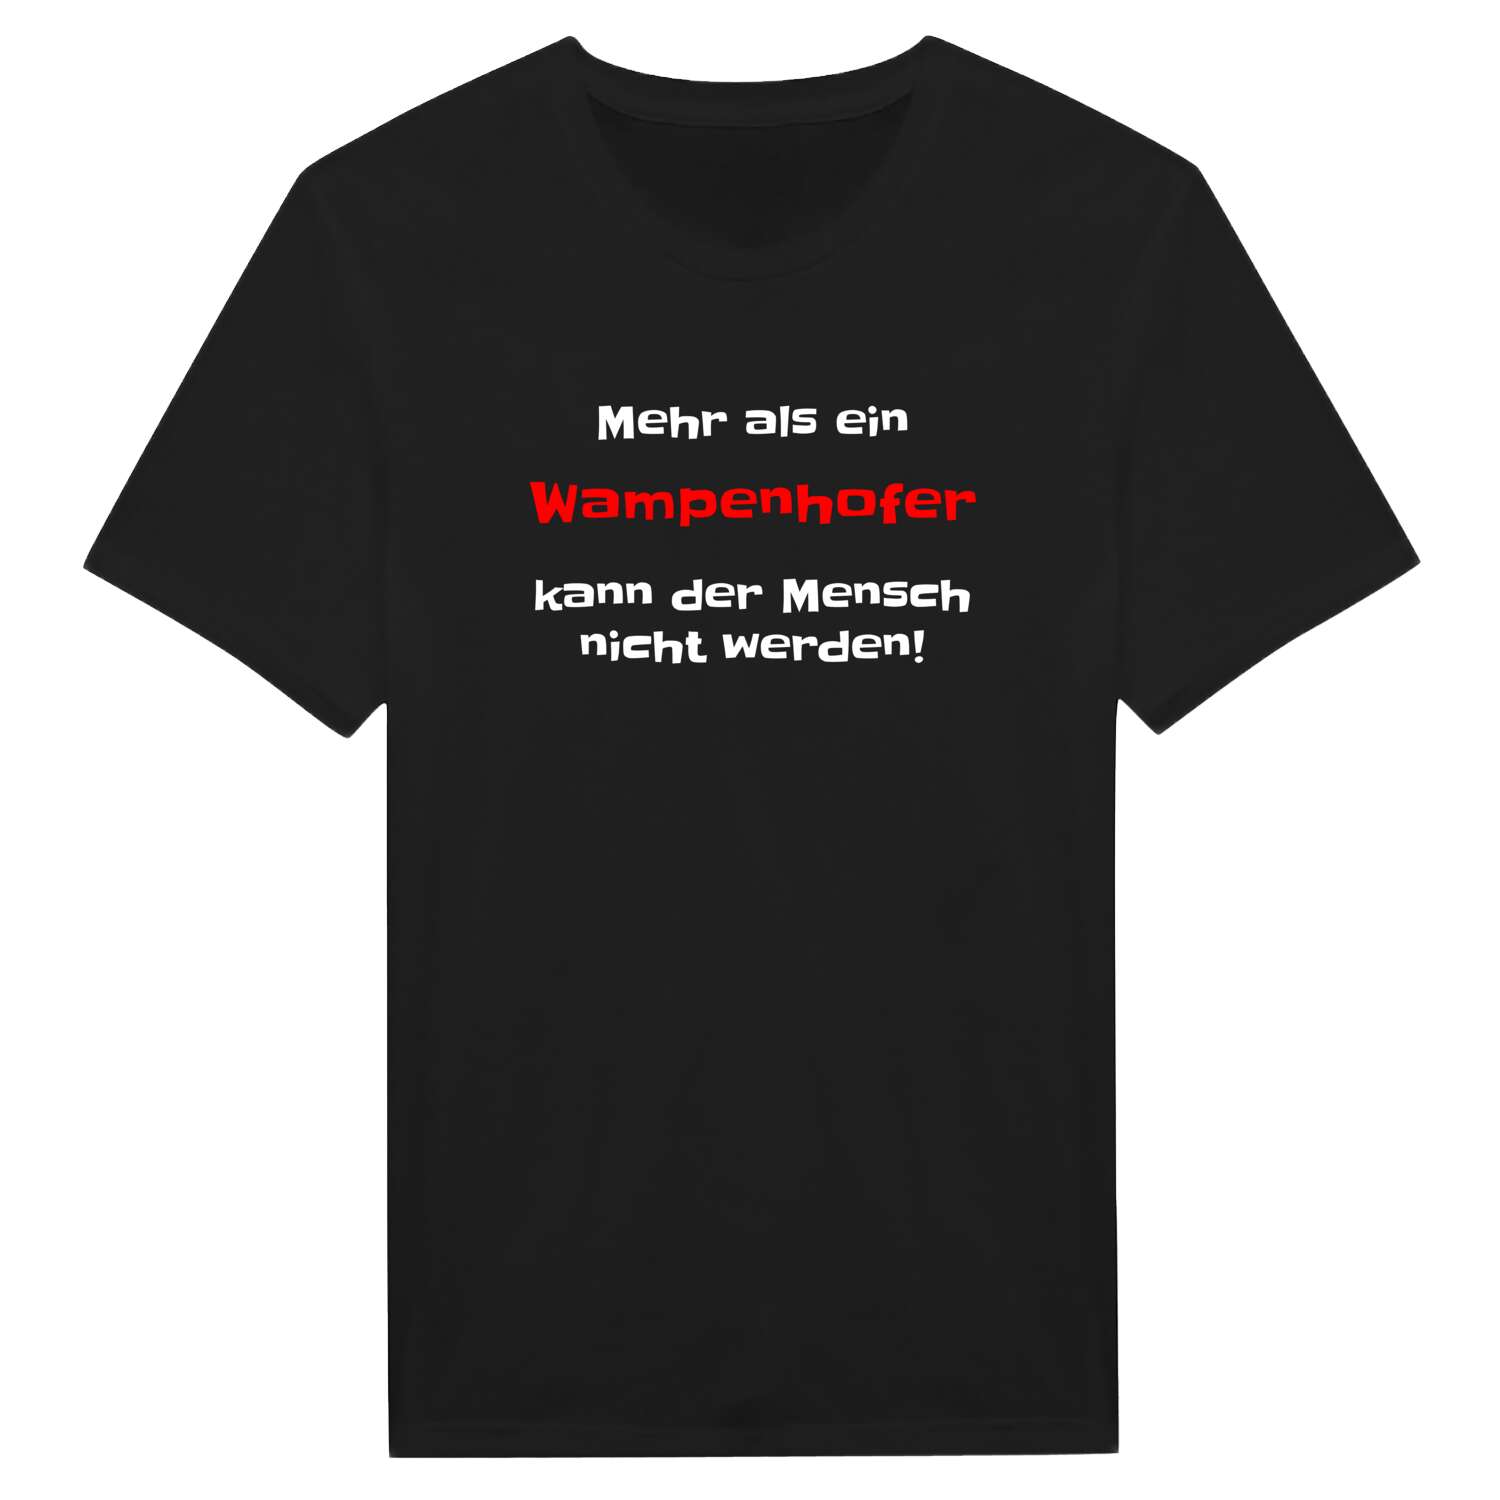 Wampenhof T-Shirt »Mehr als ein«